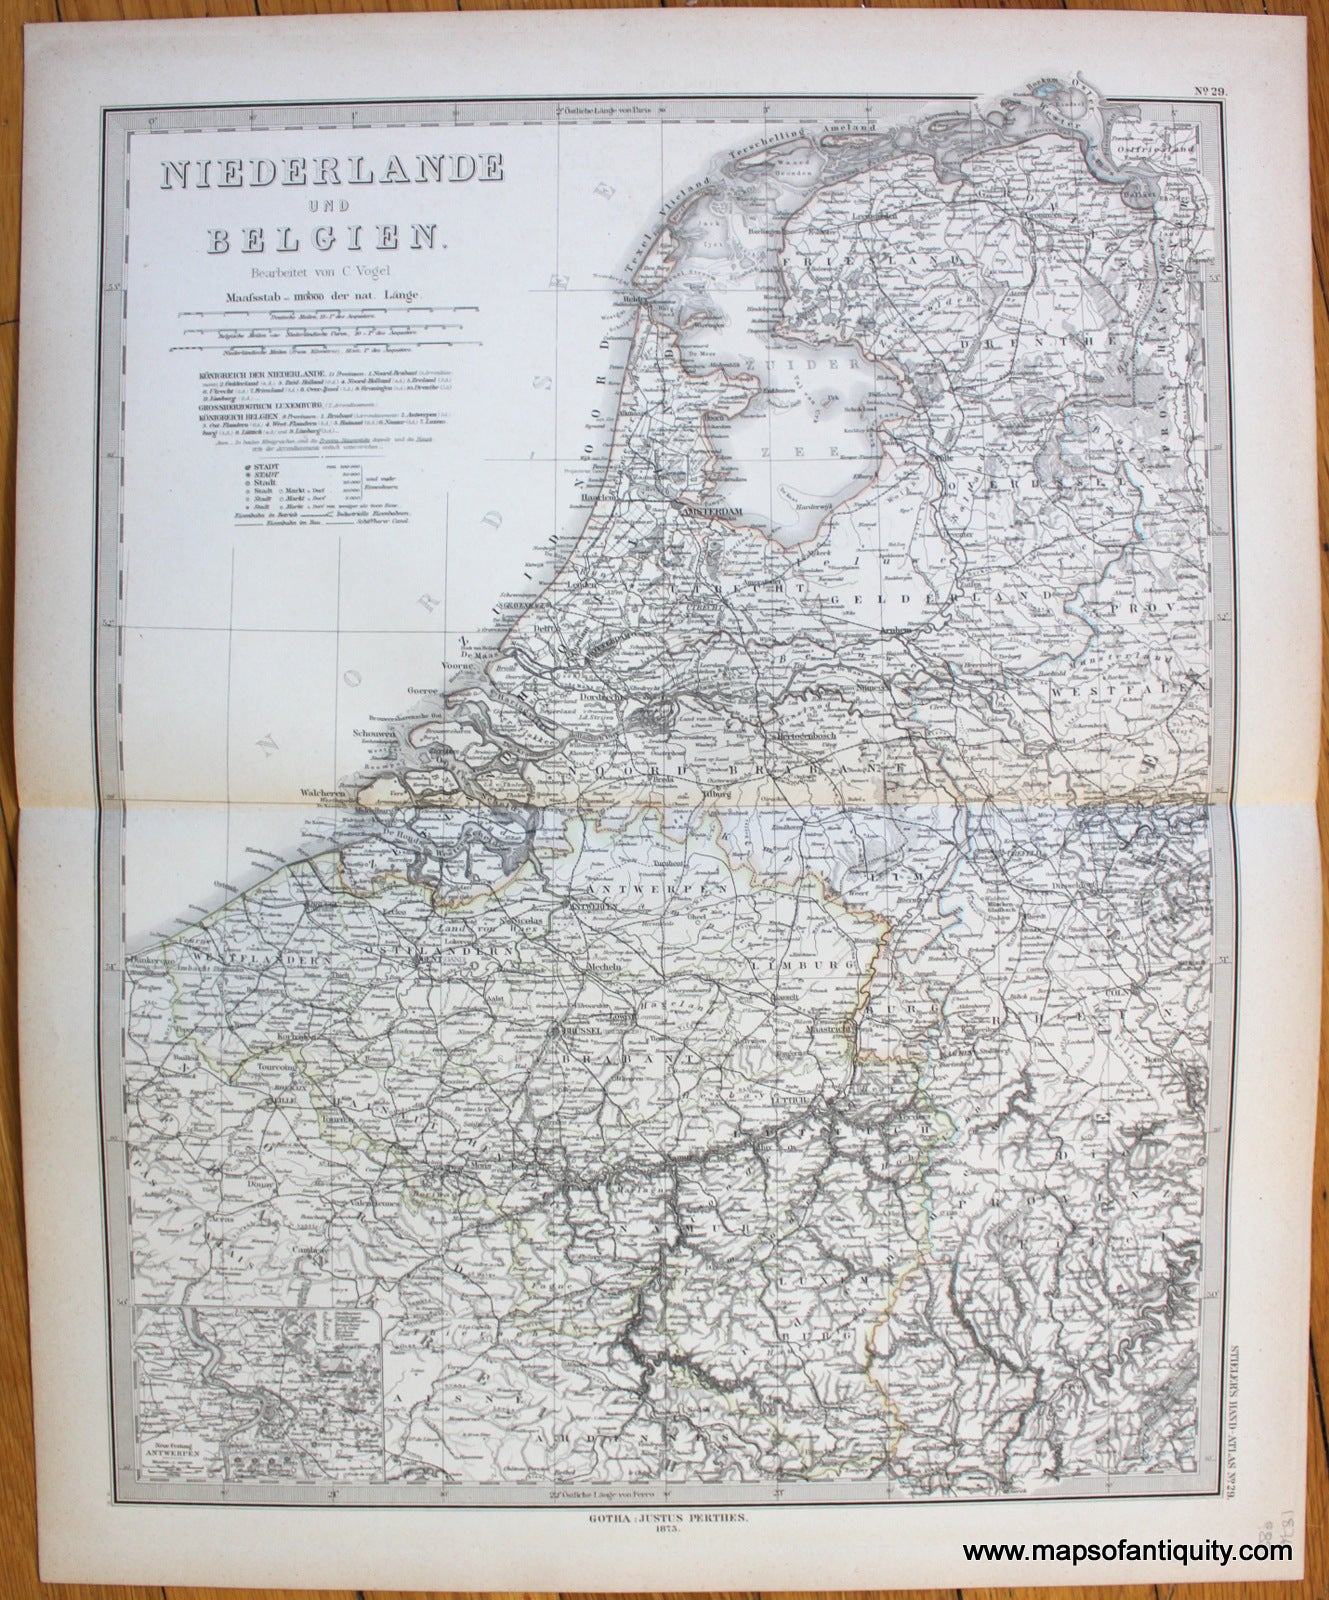 Antique-Map-Niederlande-Belgien-Netherlands-Belgium-Stieler-1876-1870s-1800s-19th-century-Maps-of-Antiquity